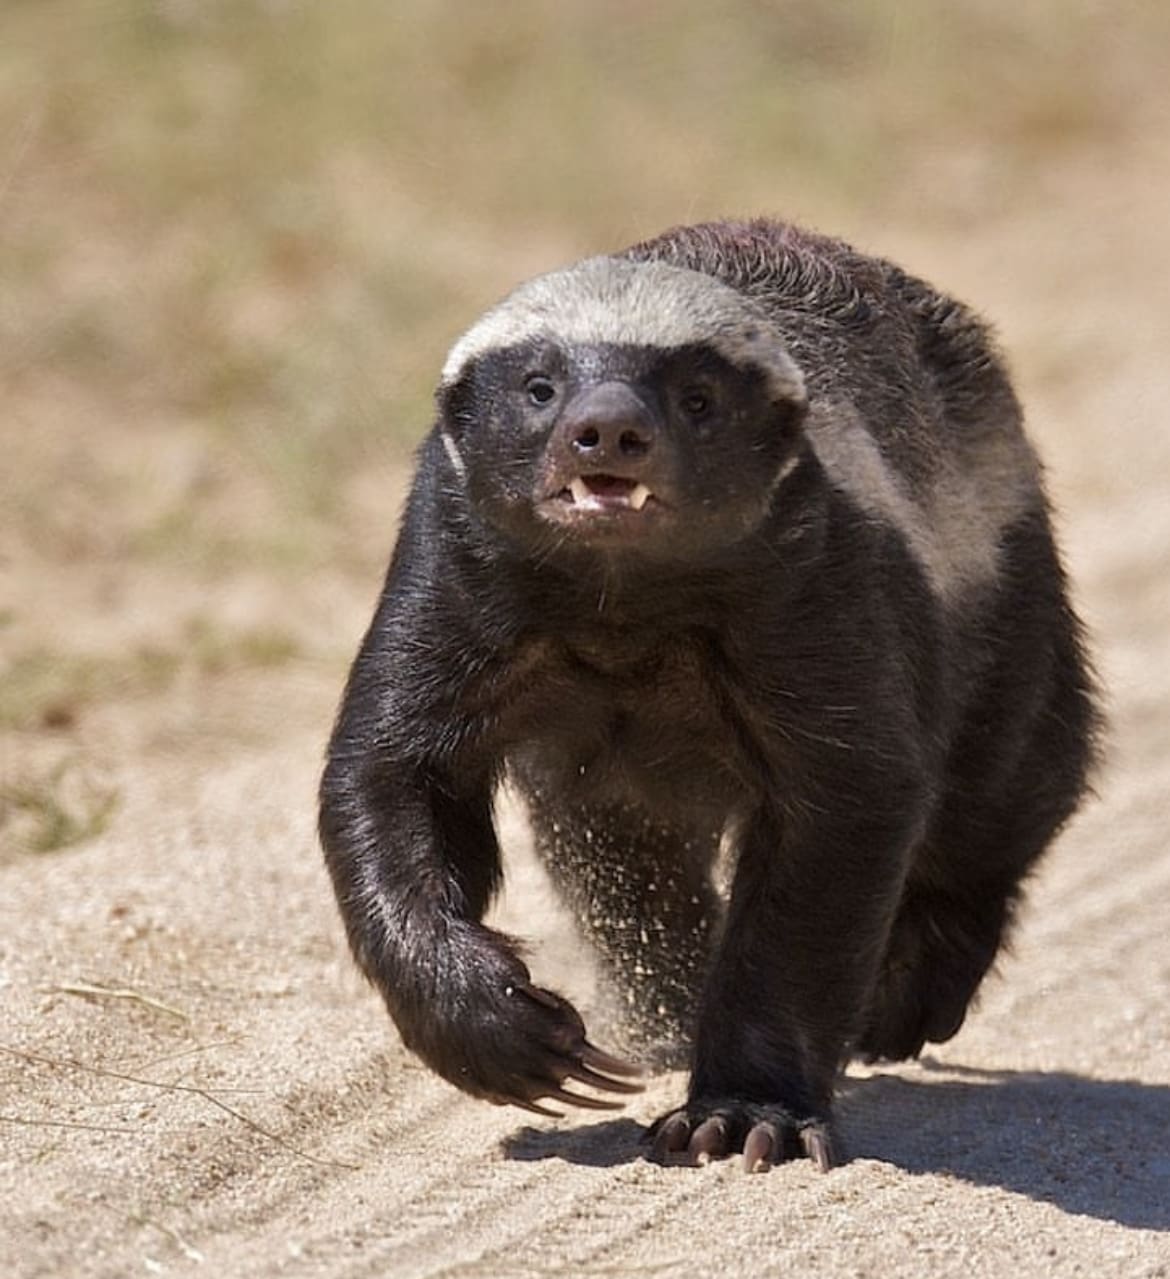 Honey badgers: Adorable but fierce little mammals